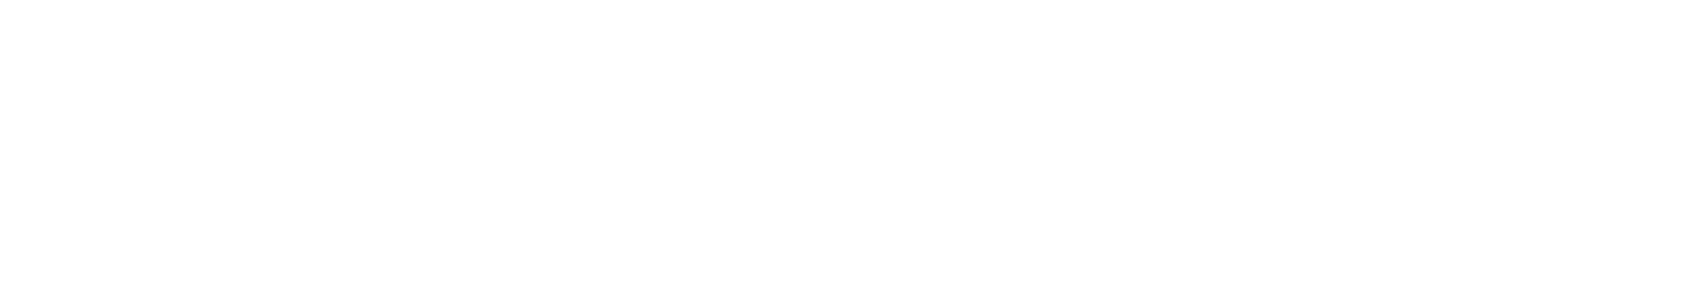 Abbey Wharf logo